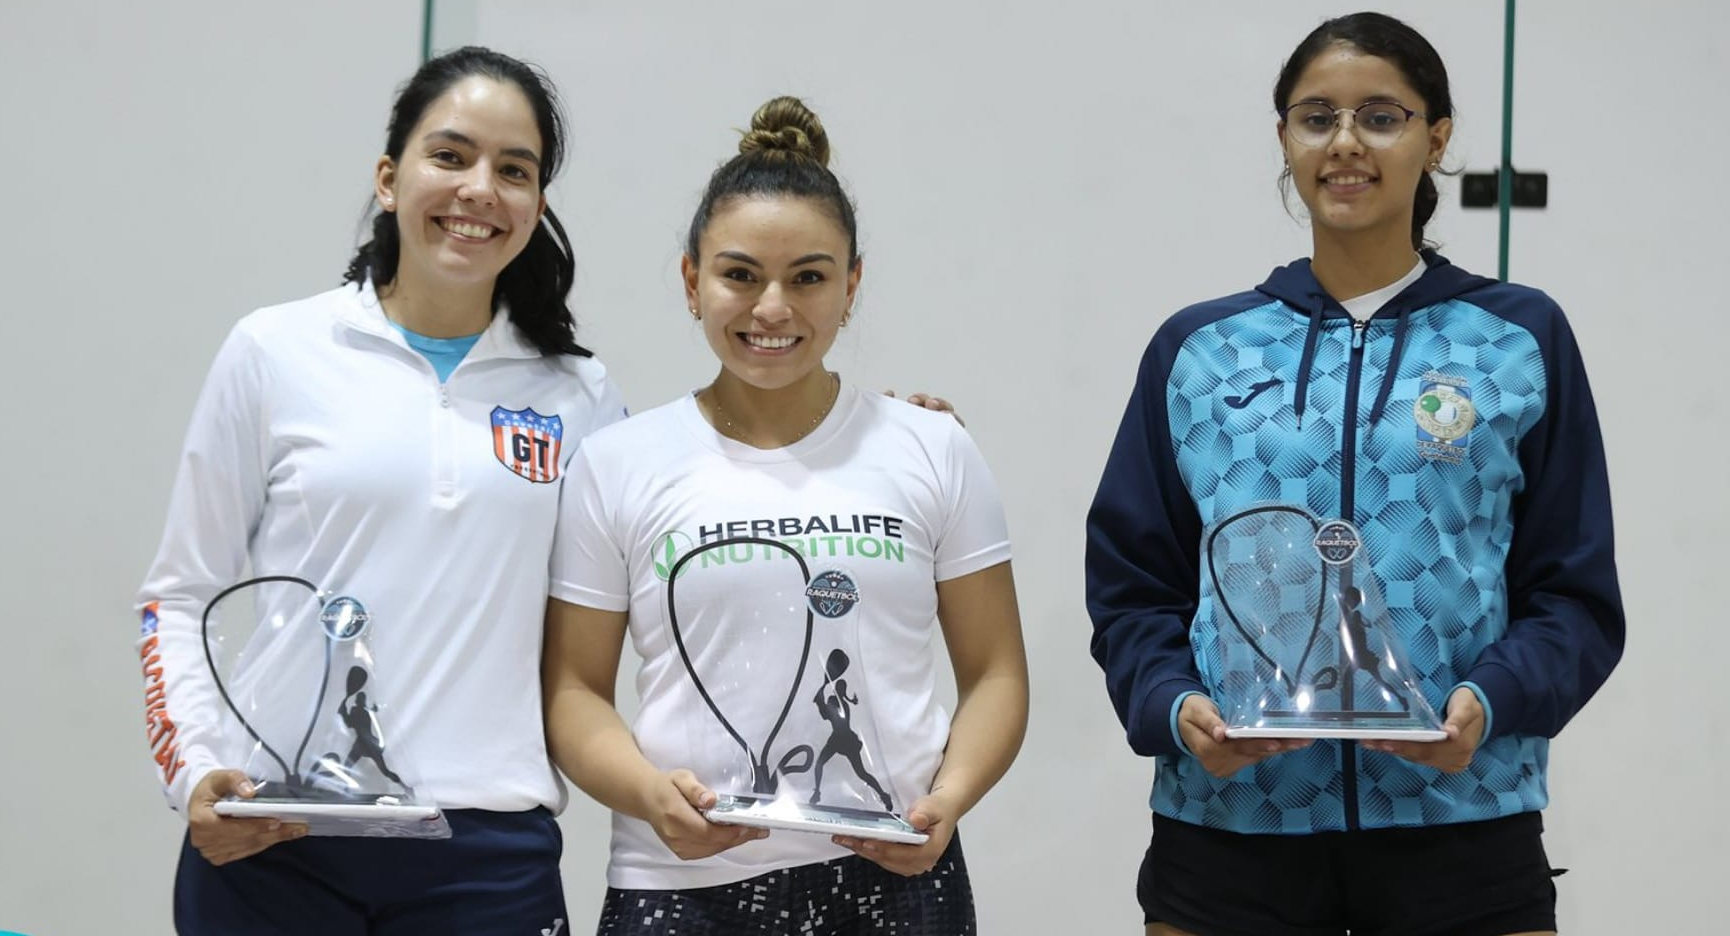  Ana Gabriela Martínez, María Renée Rodríguez y Jazmín Aguilar, serán las competidoras por Guatemala. Foto Prensa Libre Asociación de Raquetbol de Guatemala)